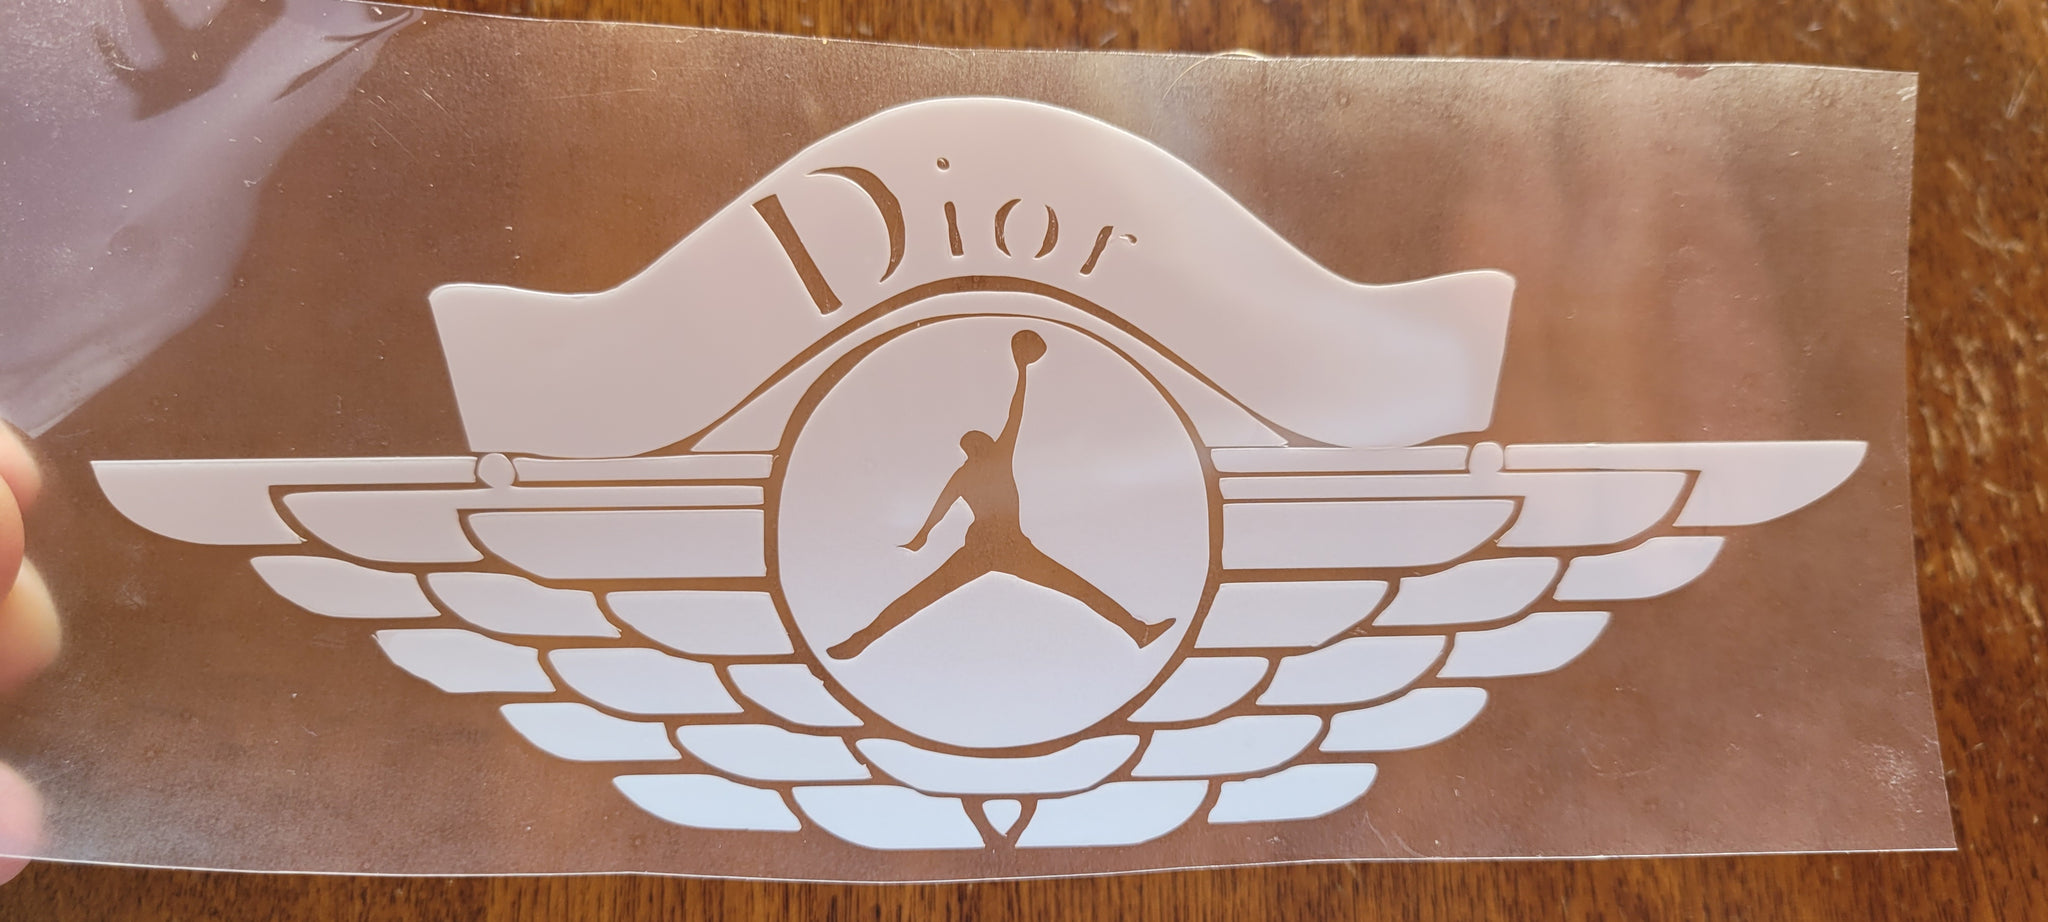 Dior x Air Jordan 1 Sneakers  POPSUGAR Fashion